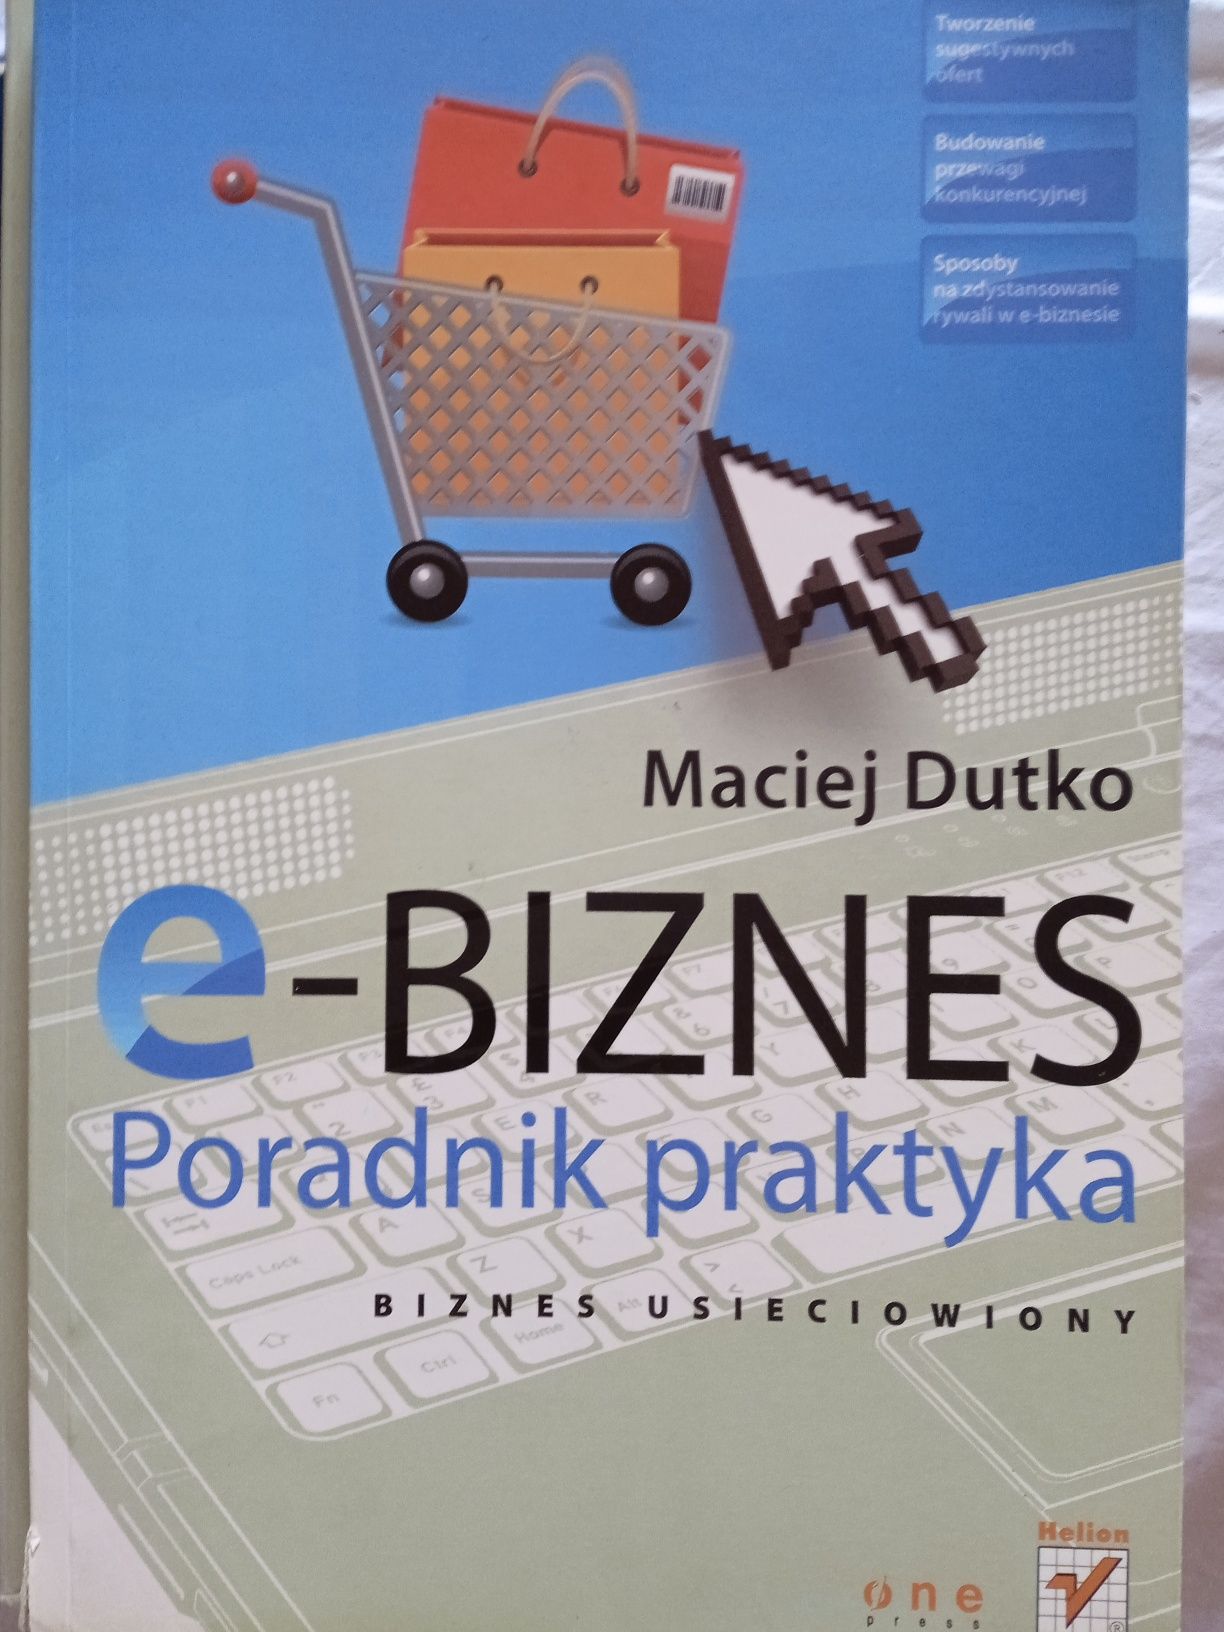 E- biznes Maciej Dutko